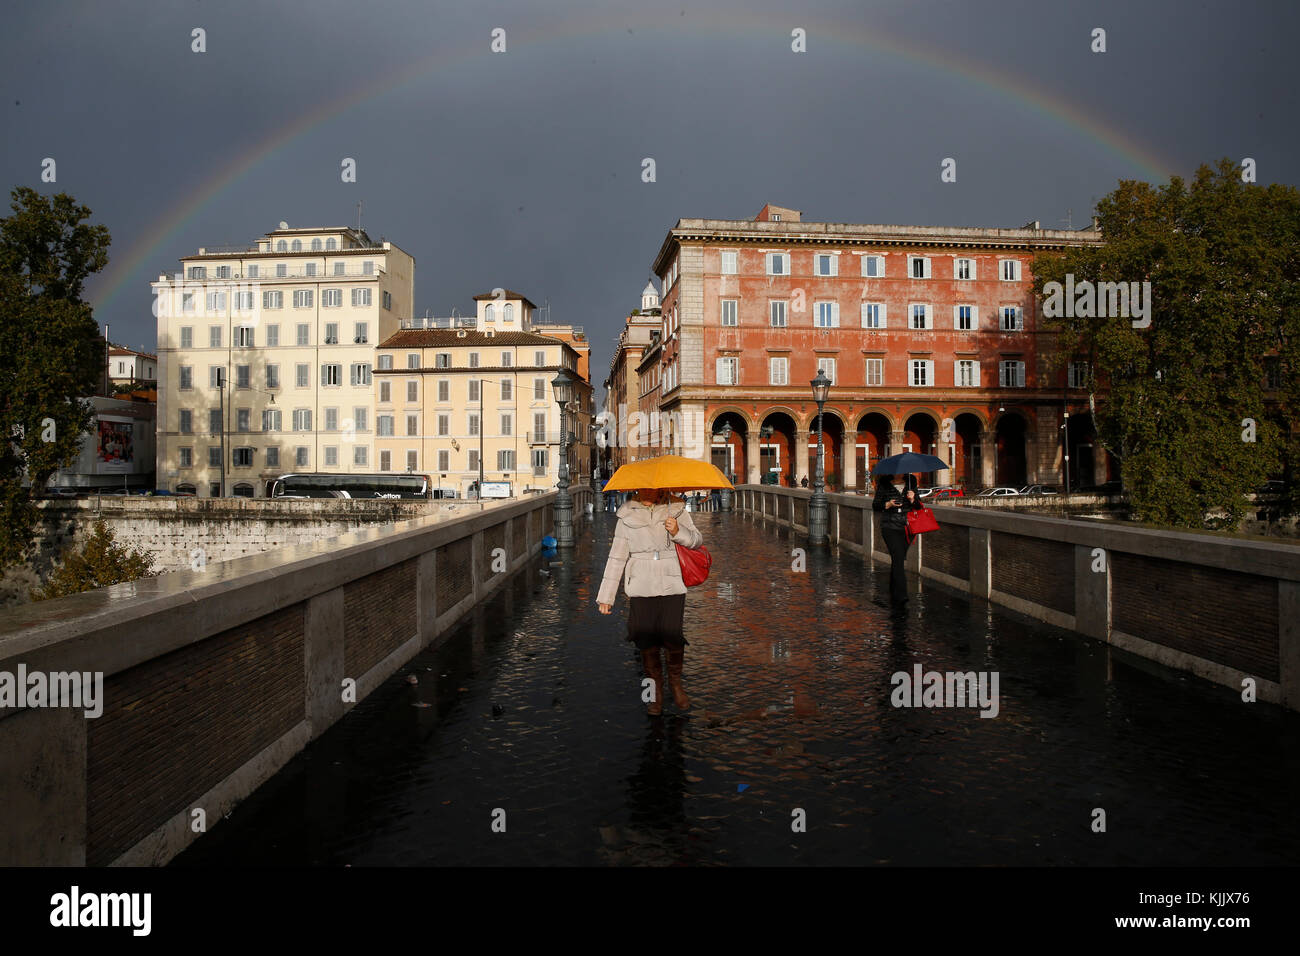 Arco iris sobre el puente Sisto, Roma. Italia. Foto de stock